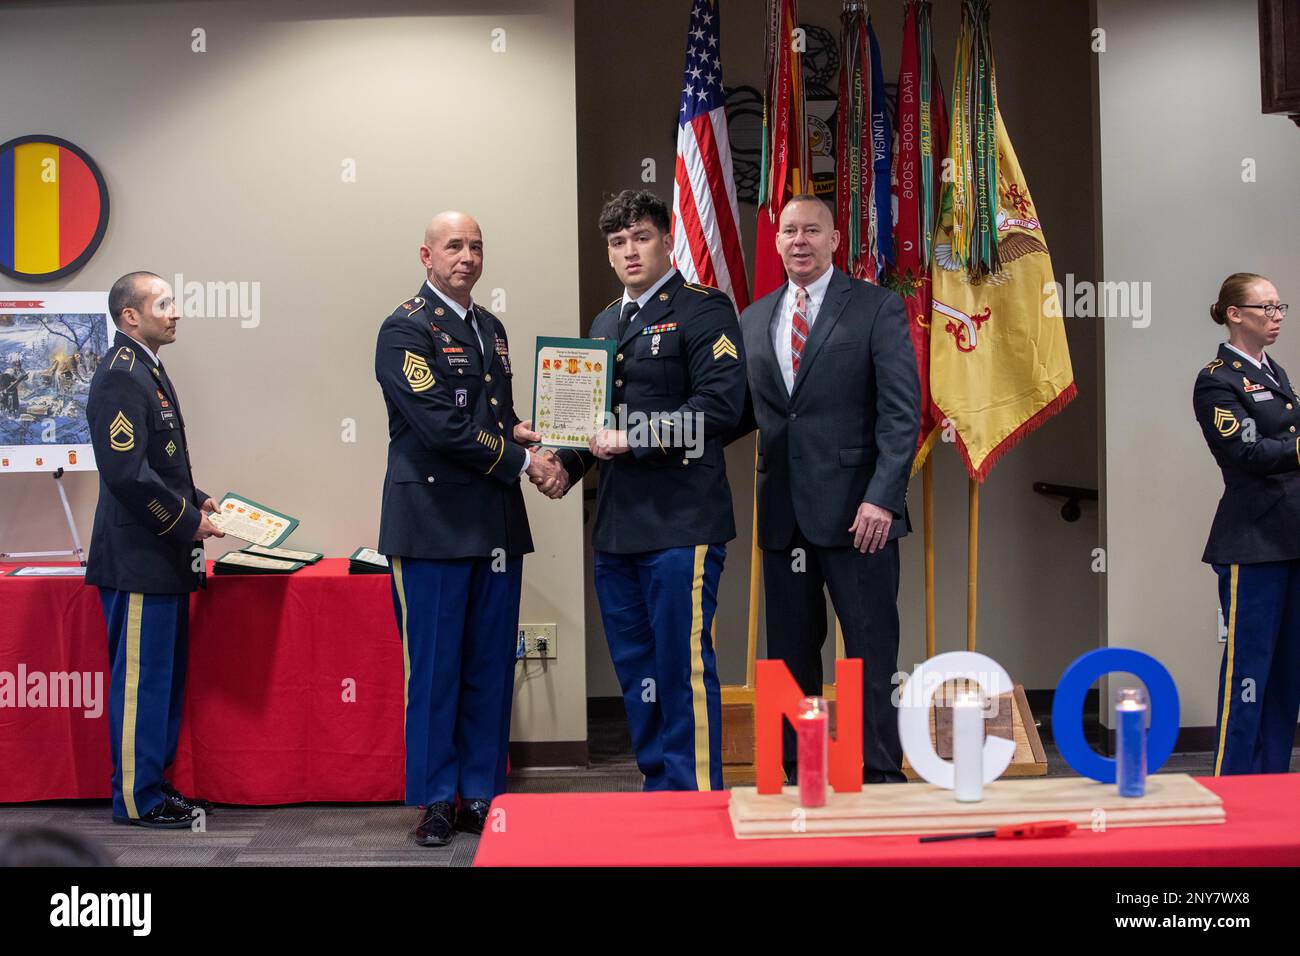 Le Sgt Isaiah X. Garcia, 3rd Bataillon, 27th Régiment d'artillerie de campagne, est intronisé dans le corps de l'ONC lors de la cérémonie d'induction de l'ONC de la Brigade d'artillerie de campagne 18th le 10 janvier 2023, à l'Académie de l'ONC, à ft. Bragg, N.F. La cérémonie d'induction célèbre les NCO nouvellement promus qui rejoignent le corps. Banque D'Images